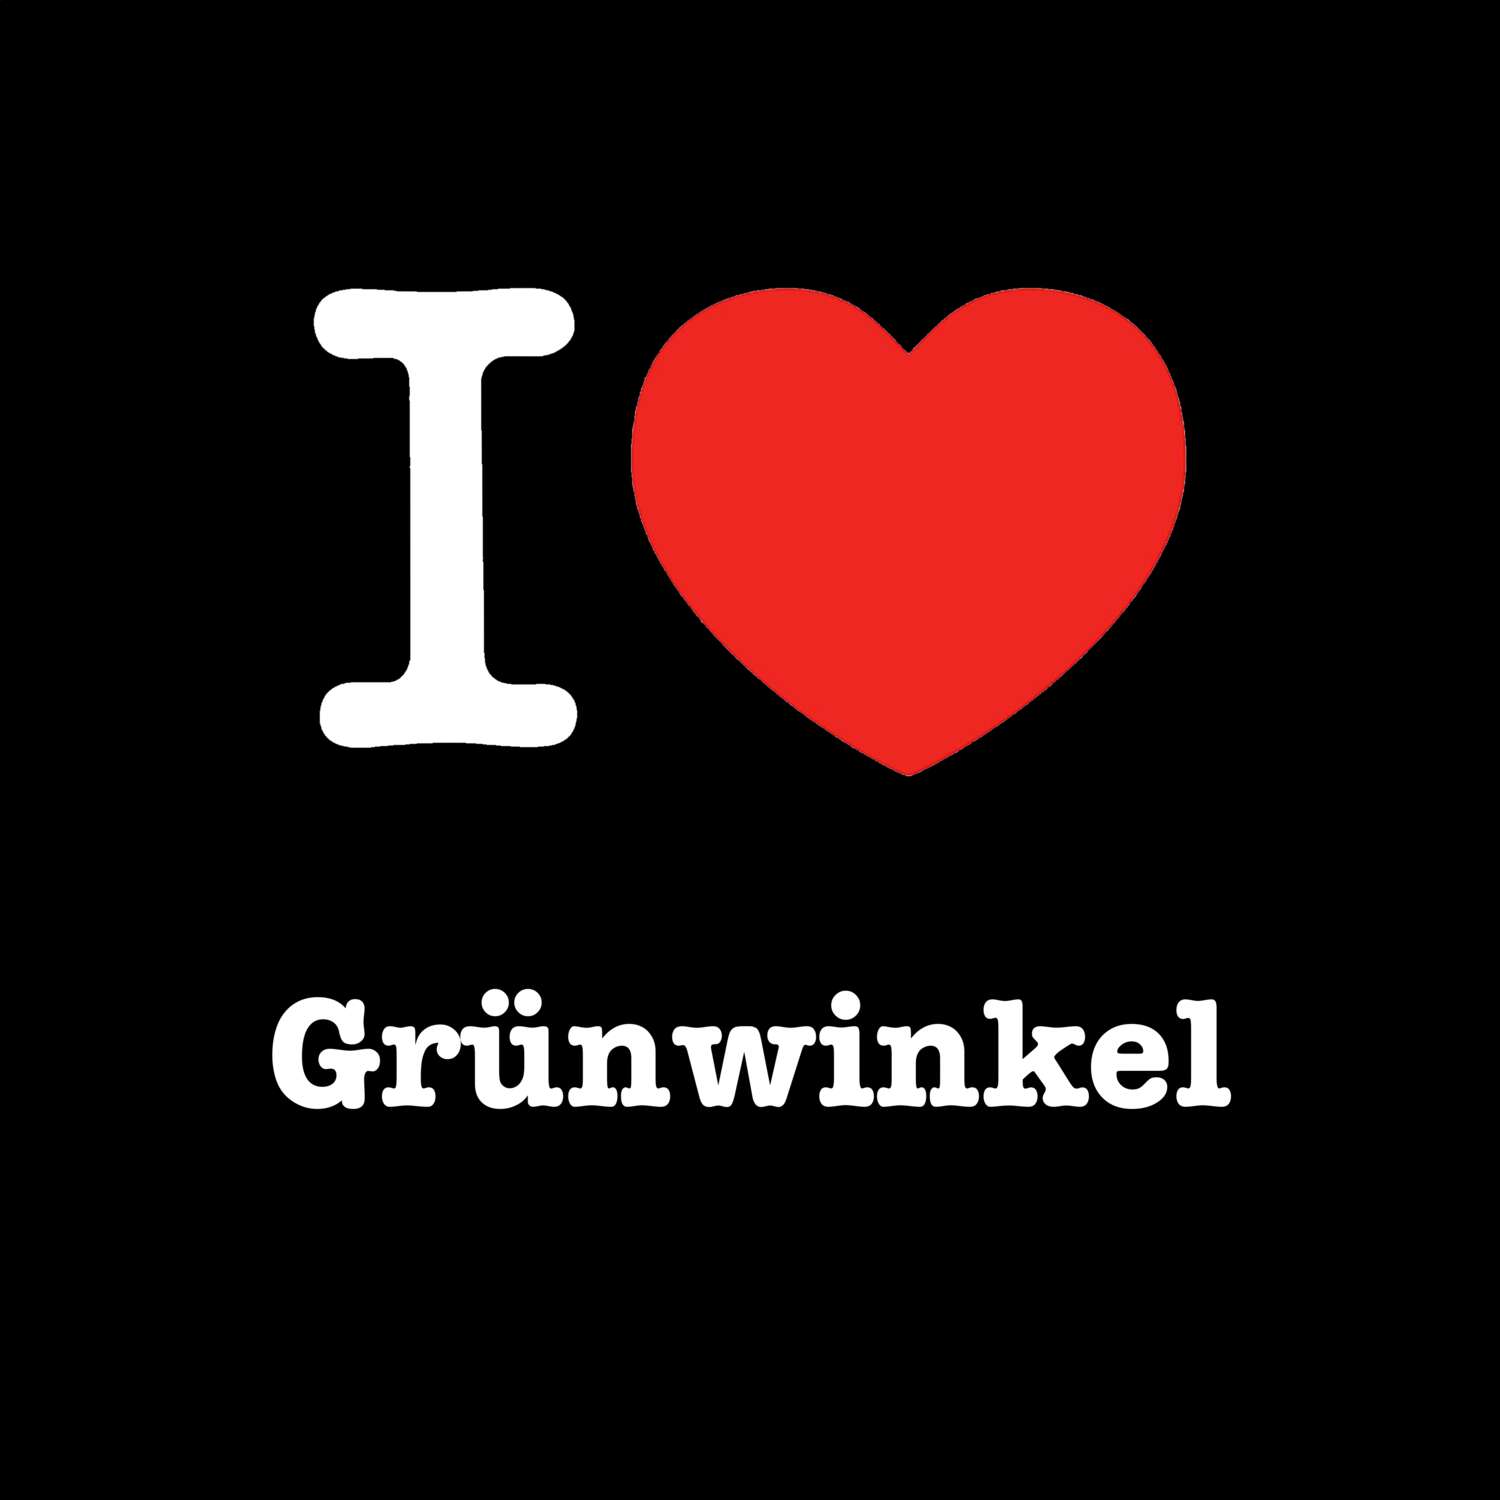 Grünwinkel T-Shirt »I love«